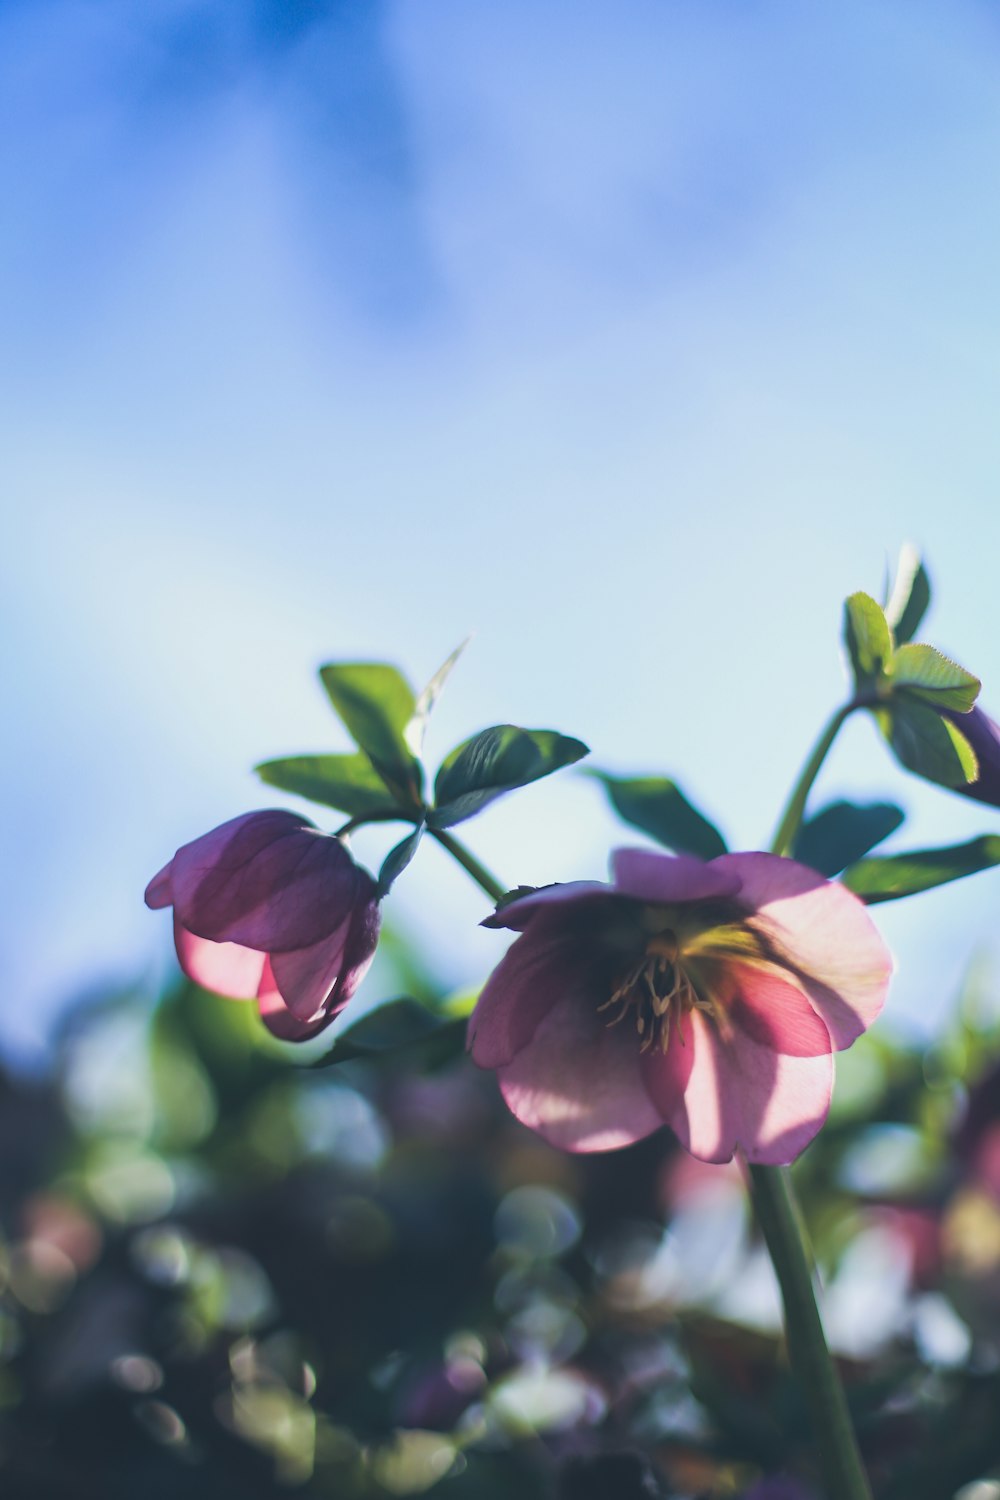 flor rosa en lente de cambio de inclinación